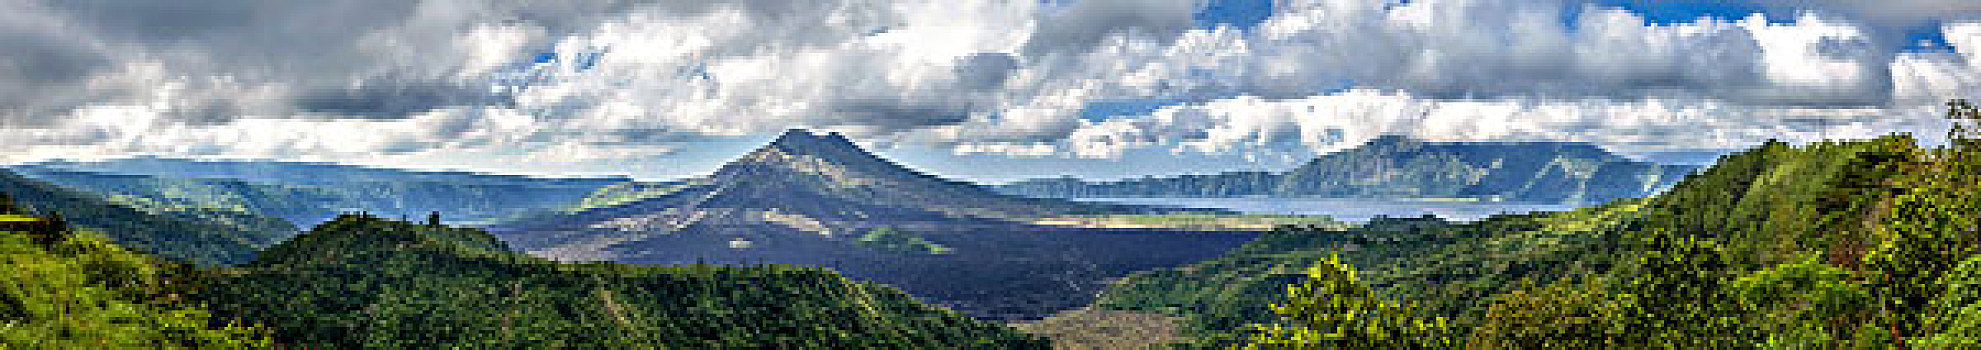 火山,图兰奔,全景,云,丛林,巴厘岛,印度尼西亚,亚洲